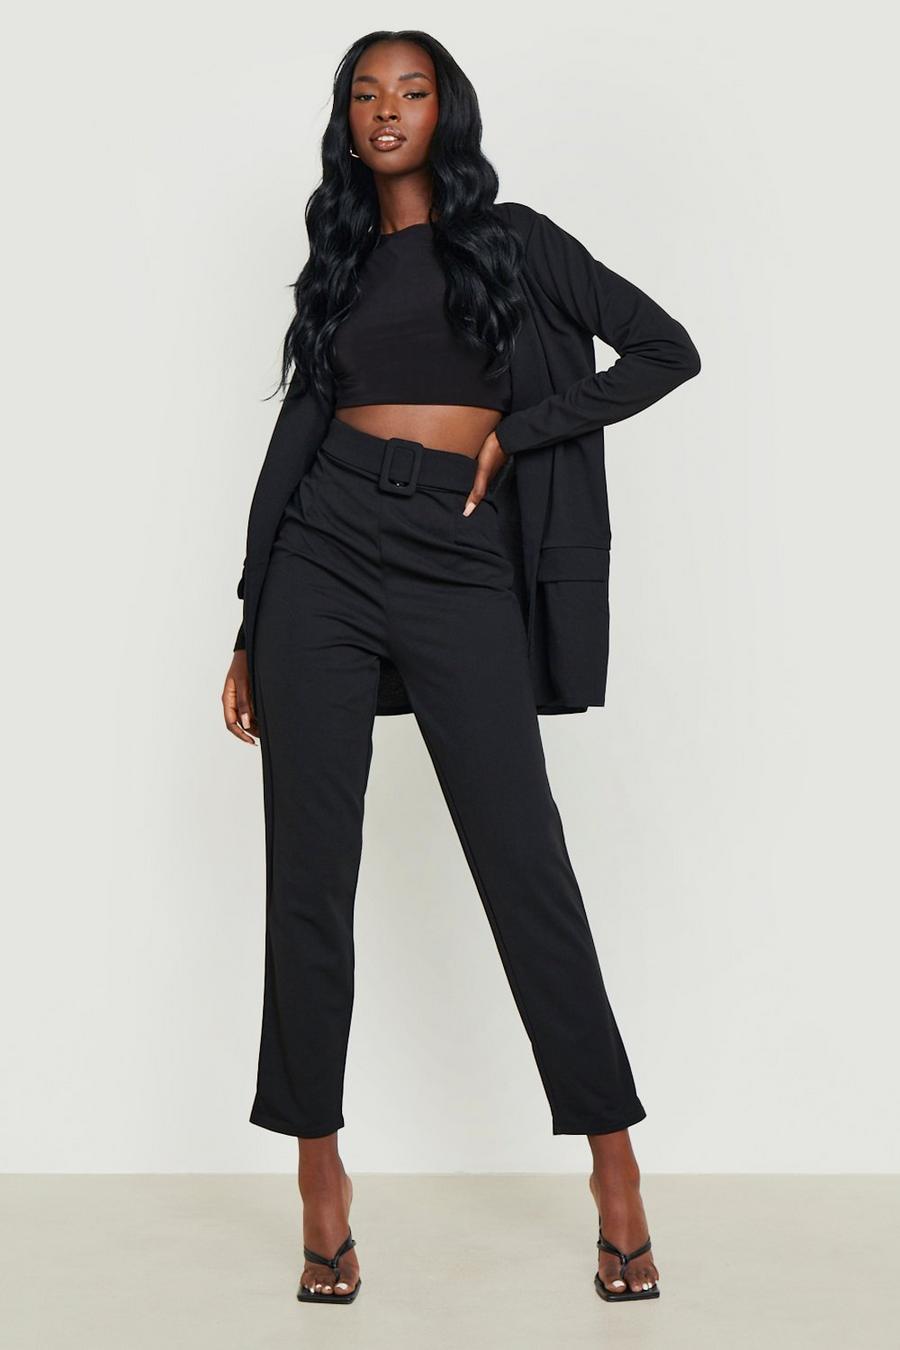 שחור nero סט חליפה עם בלייזר ומכנסיים עם חגורה מאותו הבד